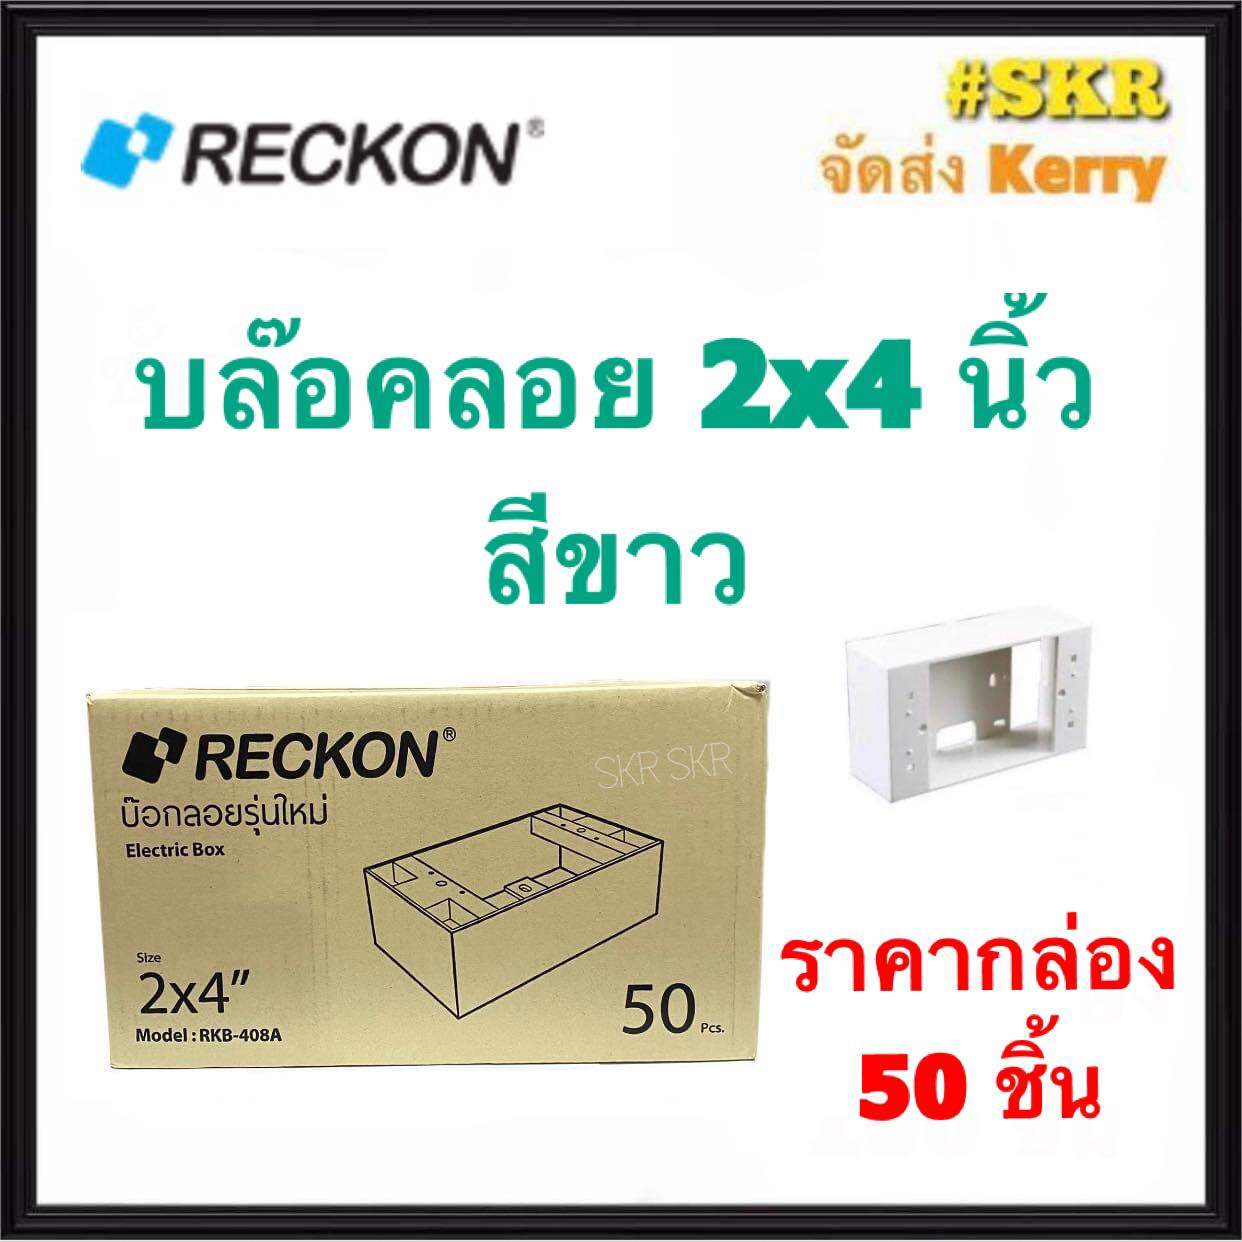 RECKON บล็อคลอย 2x4 (ราคากล่อง 50อัน) รุ่นใหม่  บ๊อกซ์ลอย บ๊อกช์ลอย บล็อค สวิตช์ ปลั๊ก กราวด์คู่ บ๊อกช์ฝาครอบ จัดส่งKerry